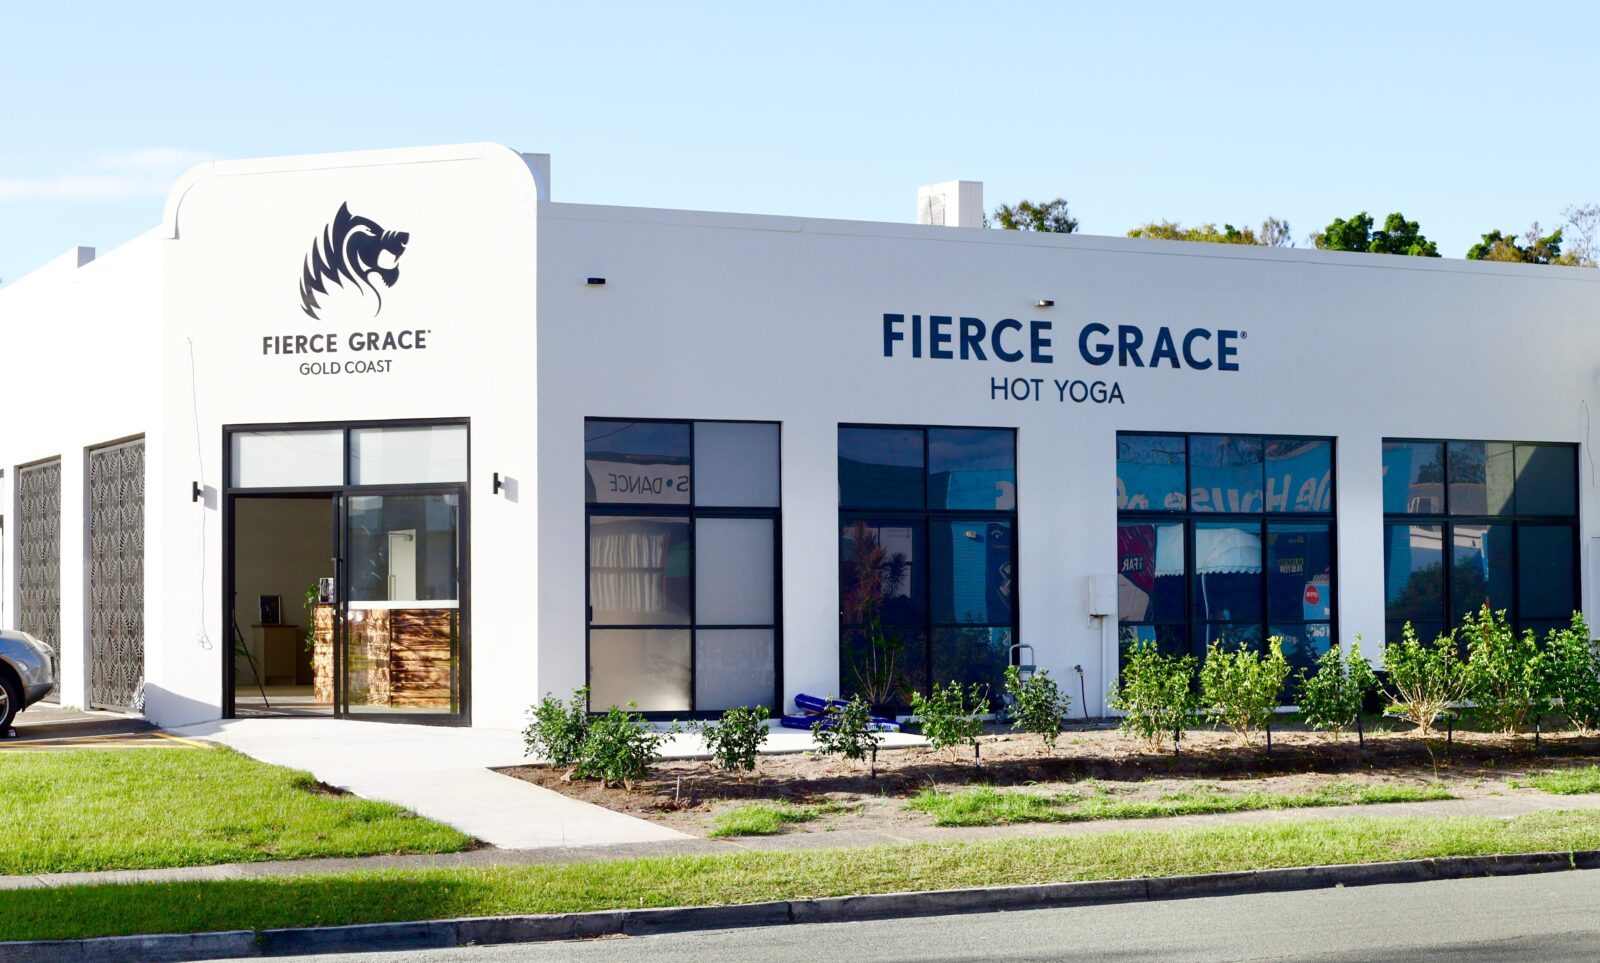 Studio Exterior Shot. Grey building with Fierce Grace branding